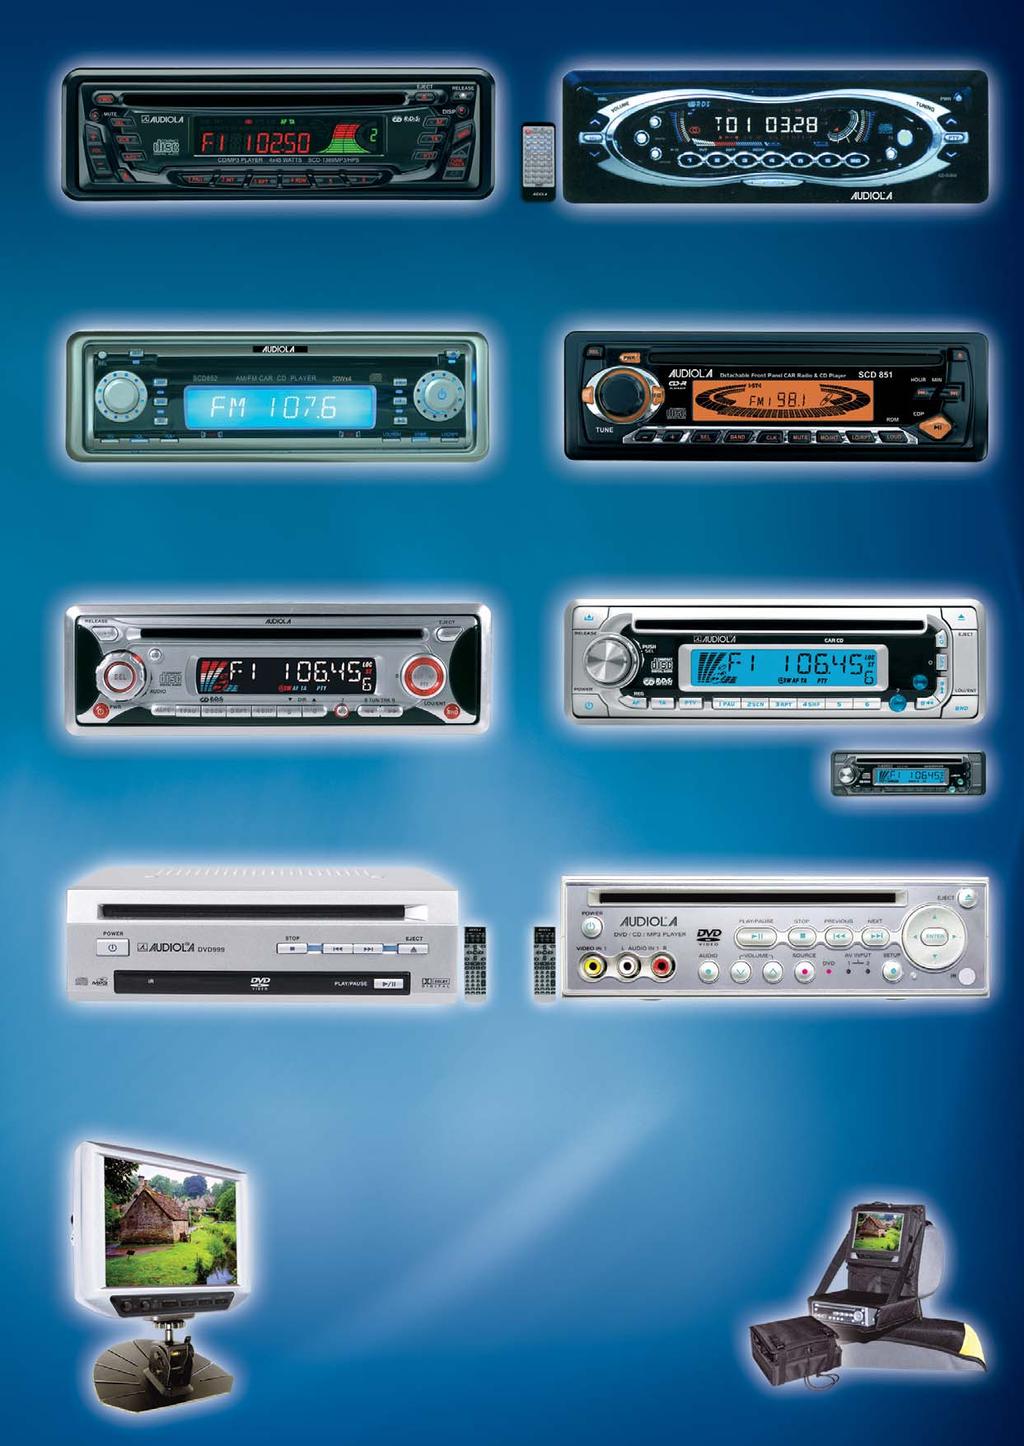 SCD 1369 MP3/HPS 180W (45W X 4ch) SINTOLETTORE CD/MP3 AUTORADIO FM/FM STEREO Sinto Lettore CD-DA/CD-R/CD-RW/MP3 - Funzione antishock 12/45sec. per CD 120sec.